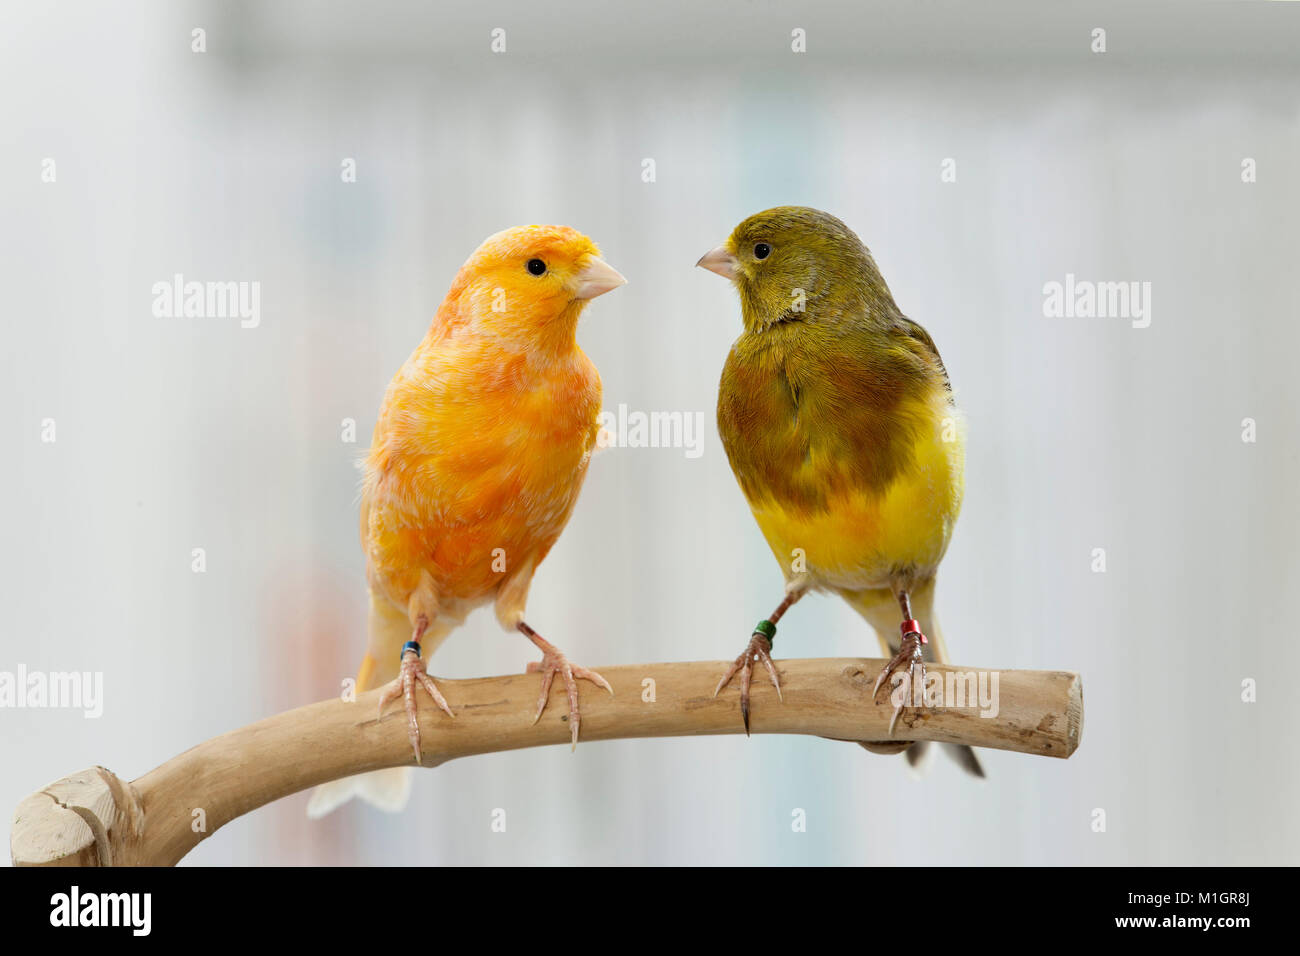 Canarias interno. Dos pájaros de diferente color posado sobre una ramita. Alemania Foto de stock